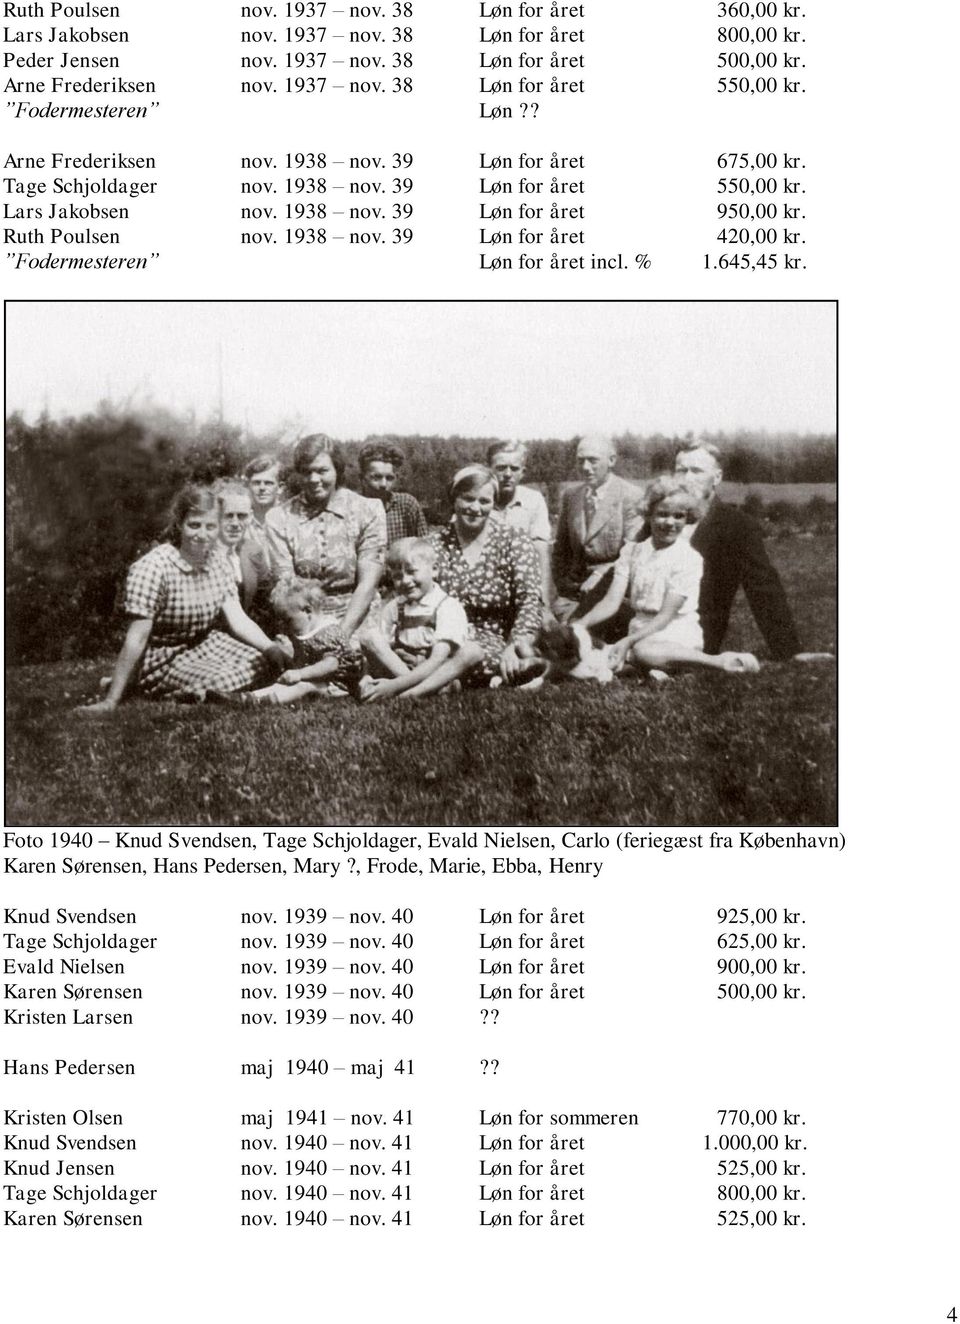 Ruth Poulsen nov. 1938 nov. 39 Løn for året 420,00 kr. Fodermesteren Løn for året incl. % 1.645,45 kr.